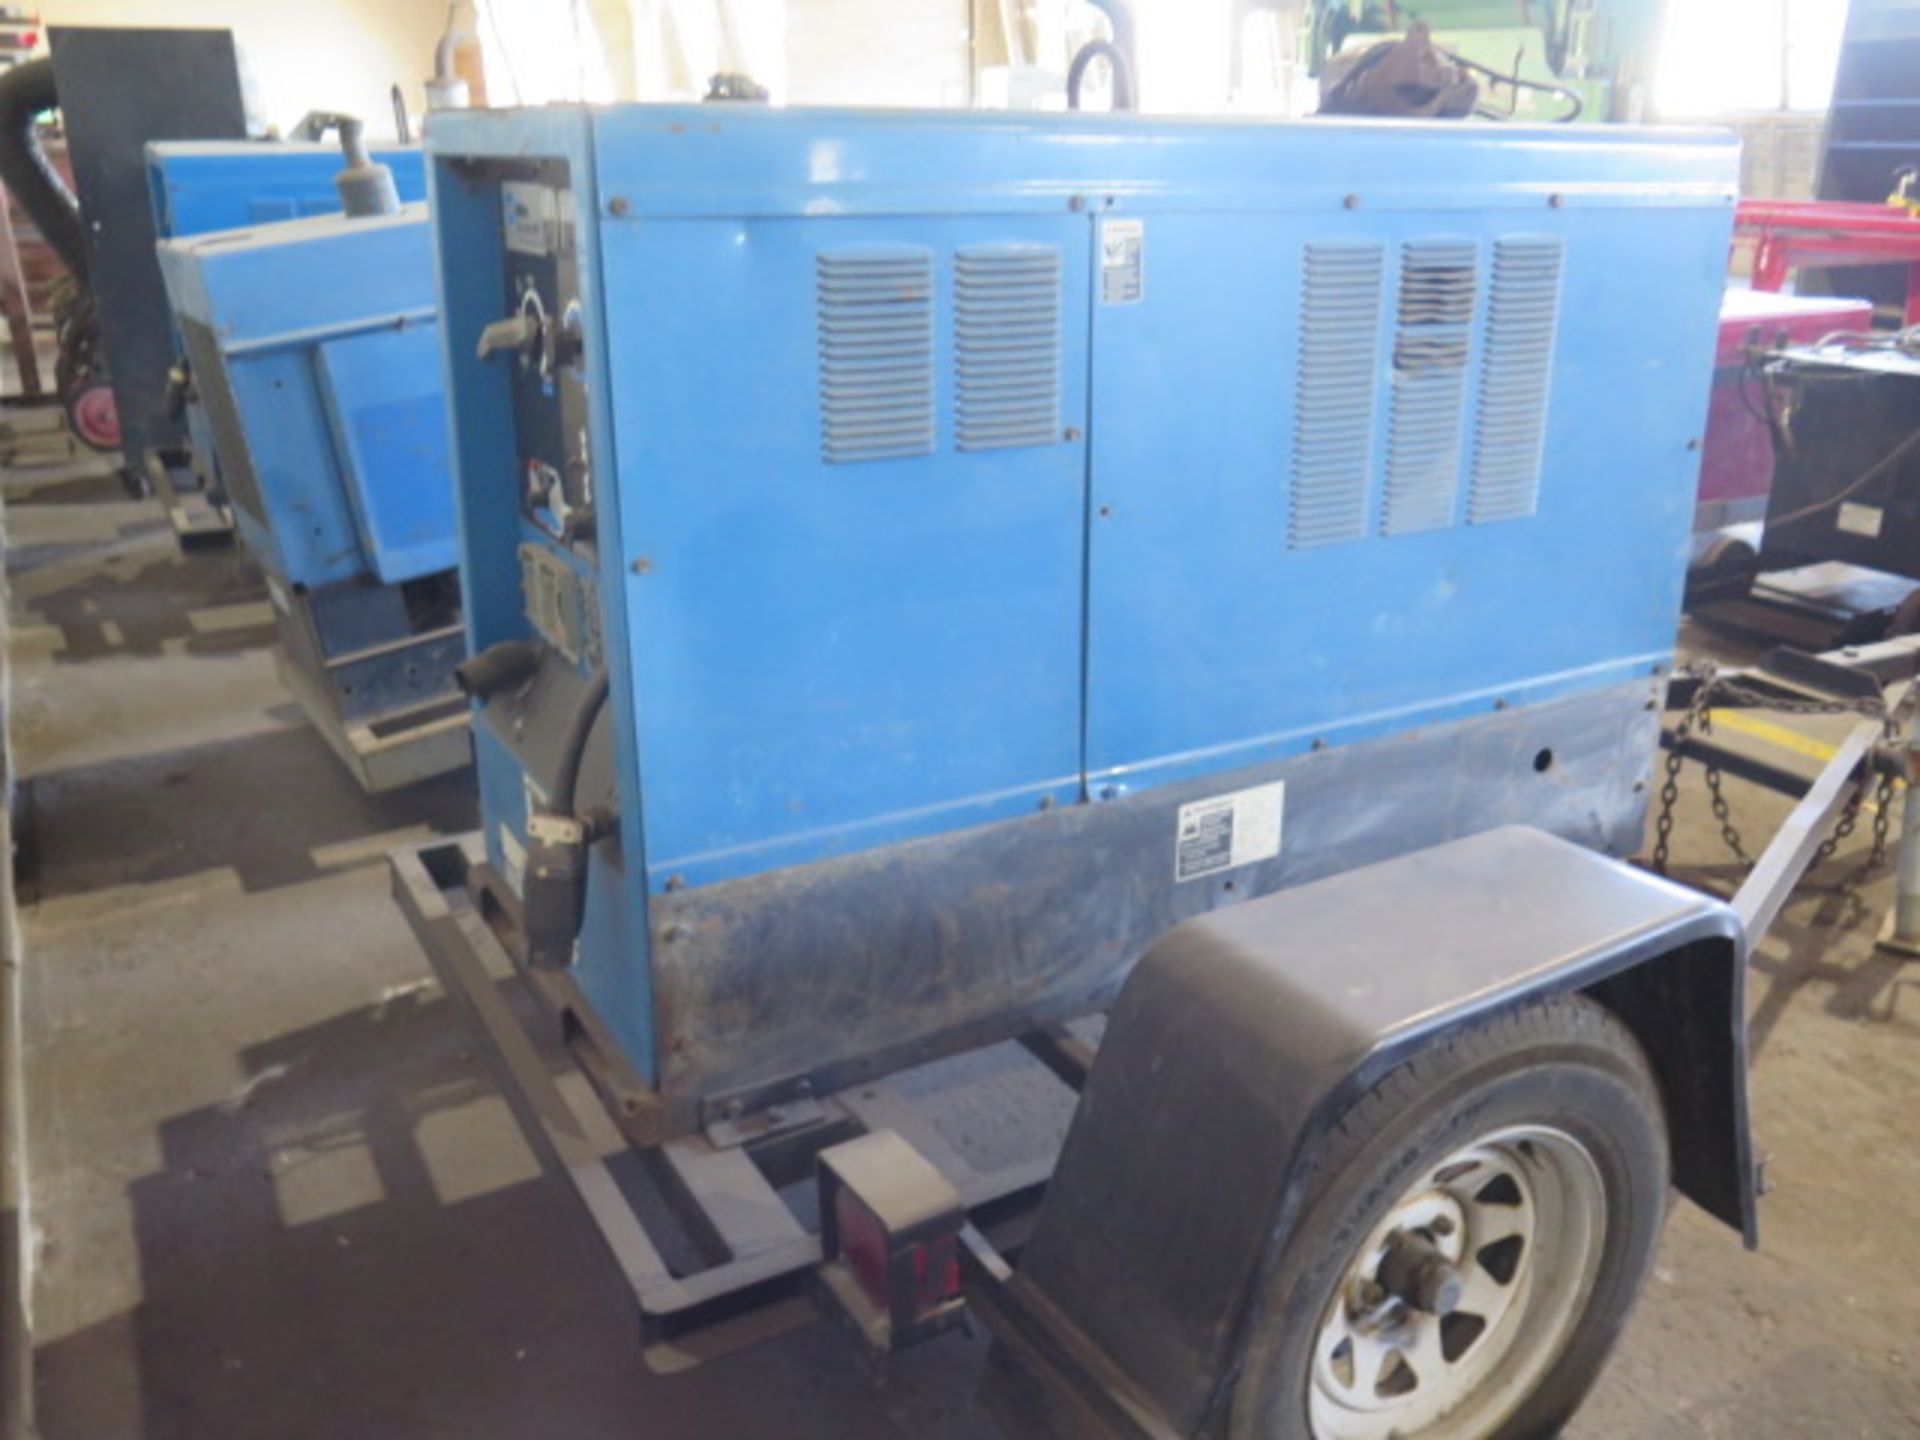 Miller Big Blue 402P Towable Diesel CC/CV-DC Welding Generator w Perkins Diesel Engine, SOLD AS IS - Image 4 of 17